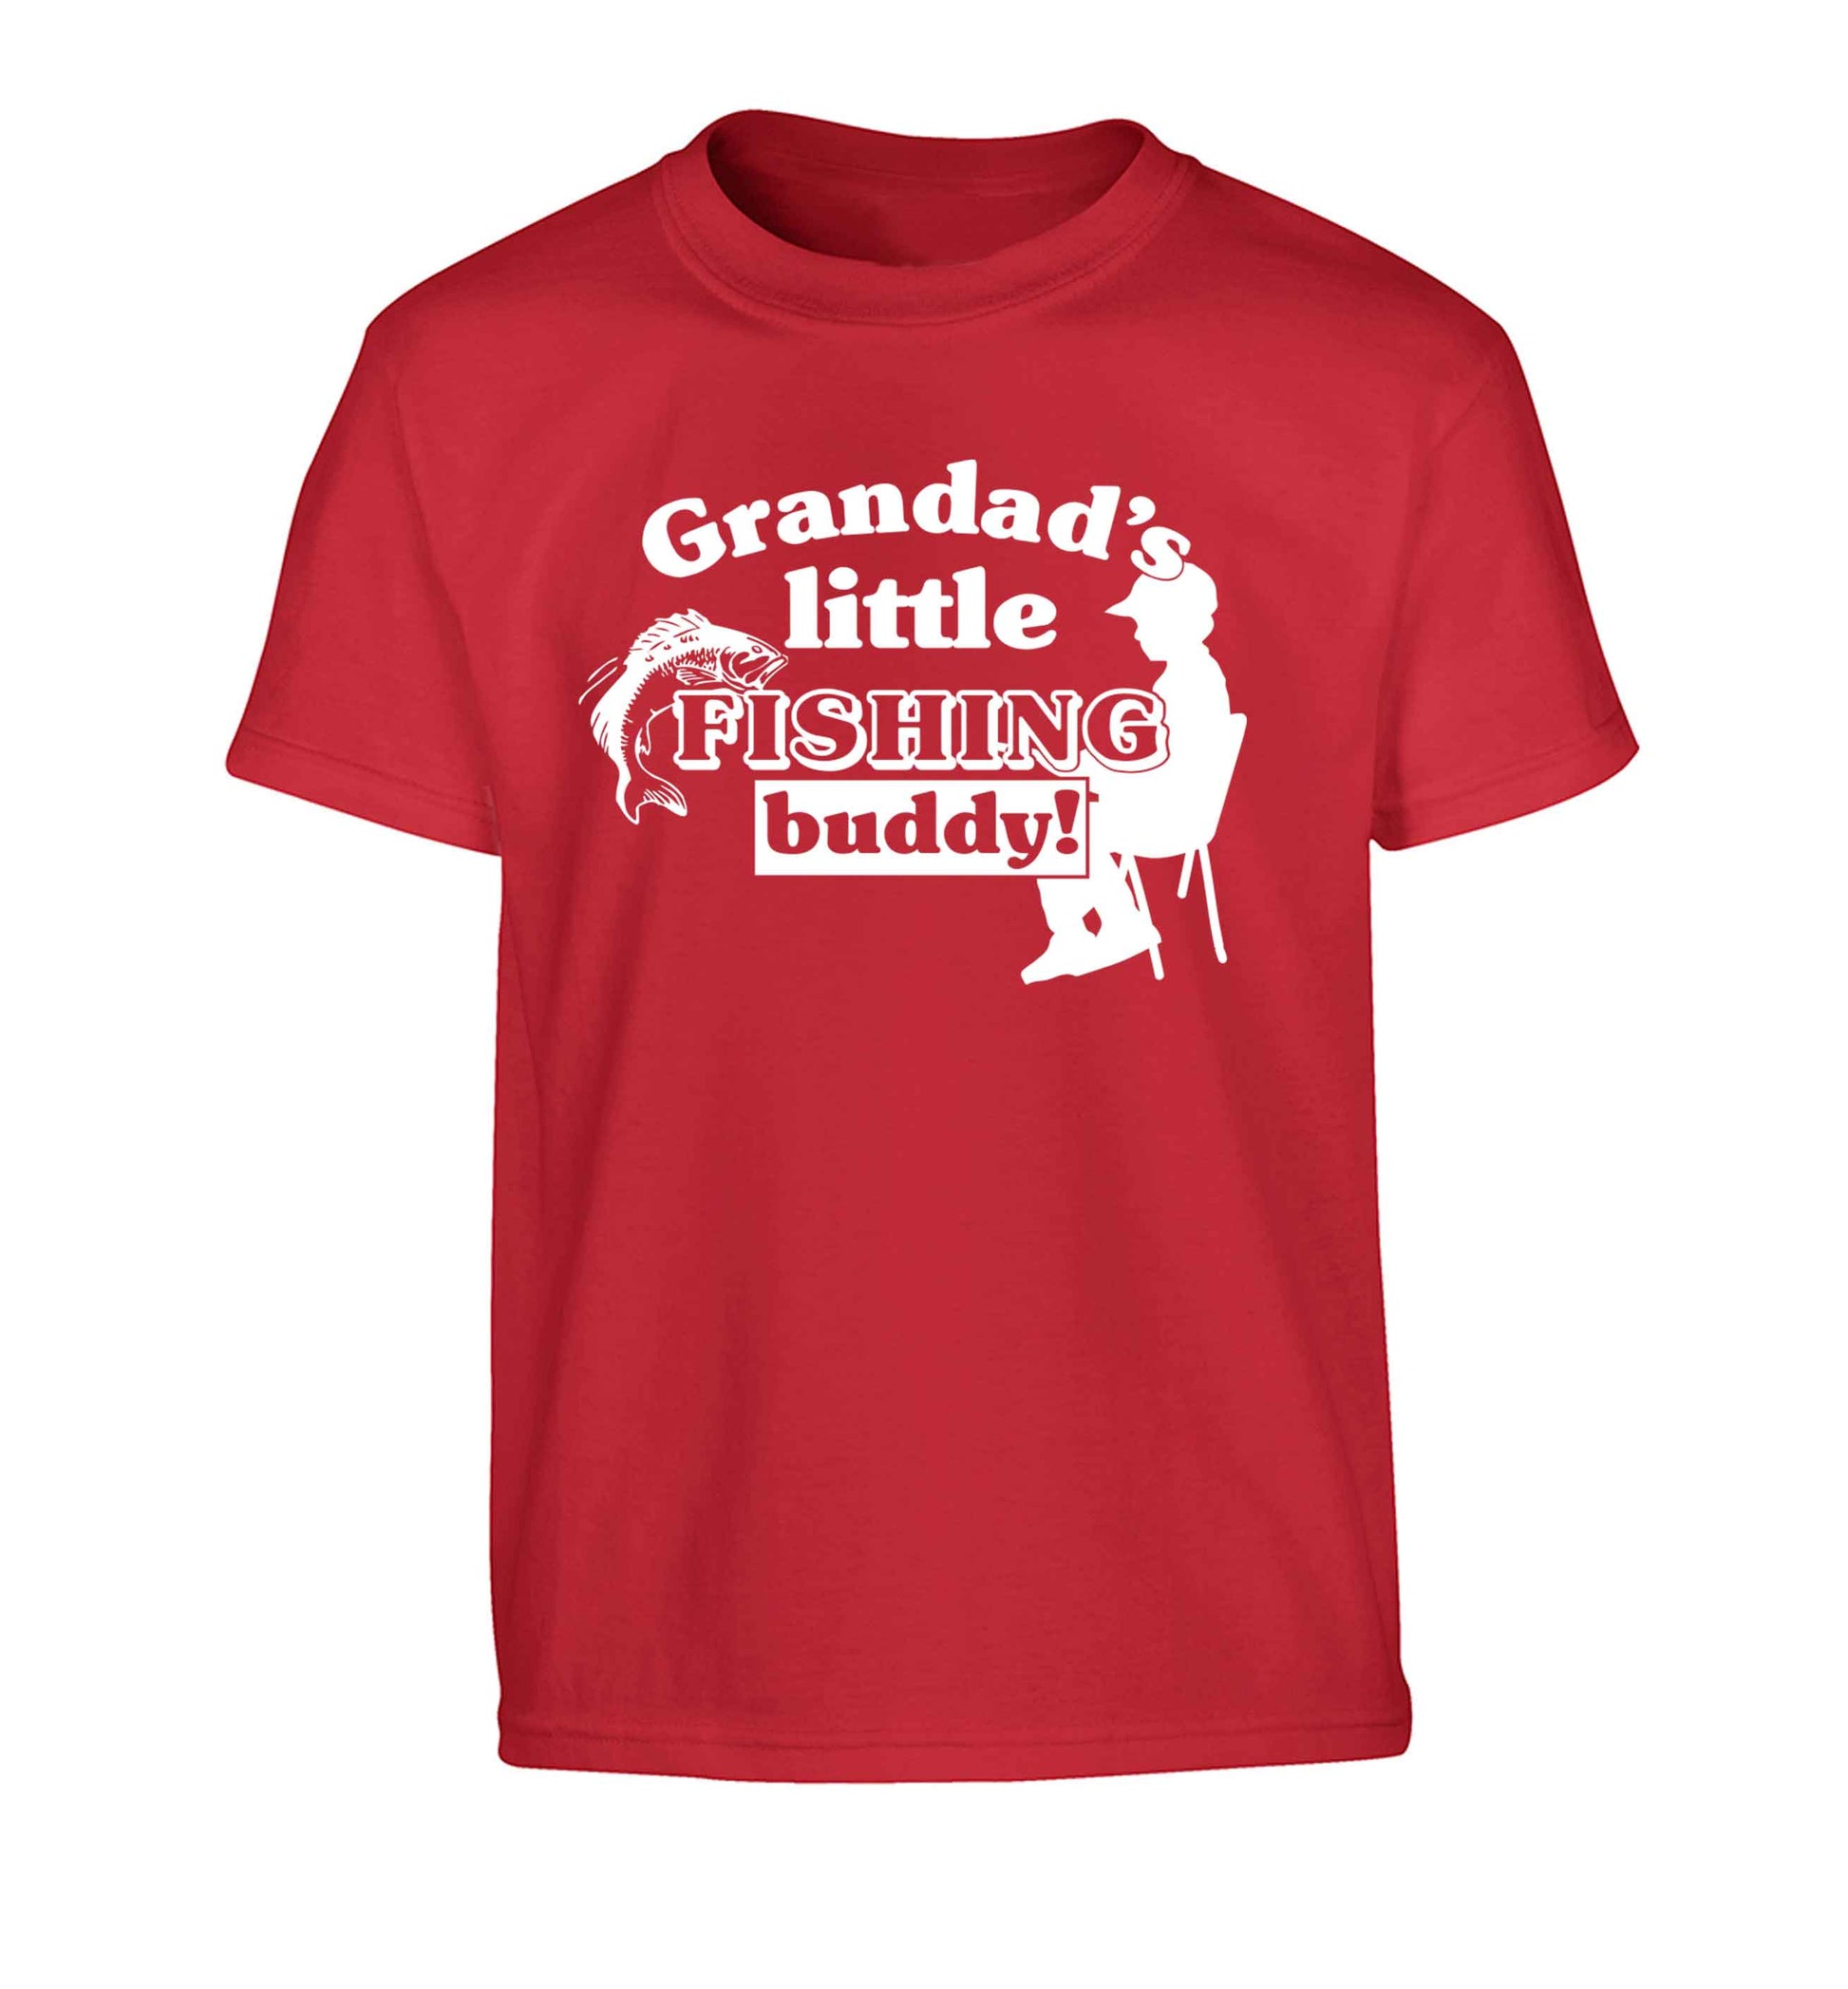 Grandad's little fishing buddy! Children's red Tshirt 12-13 Years